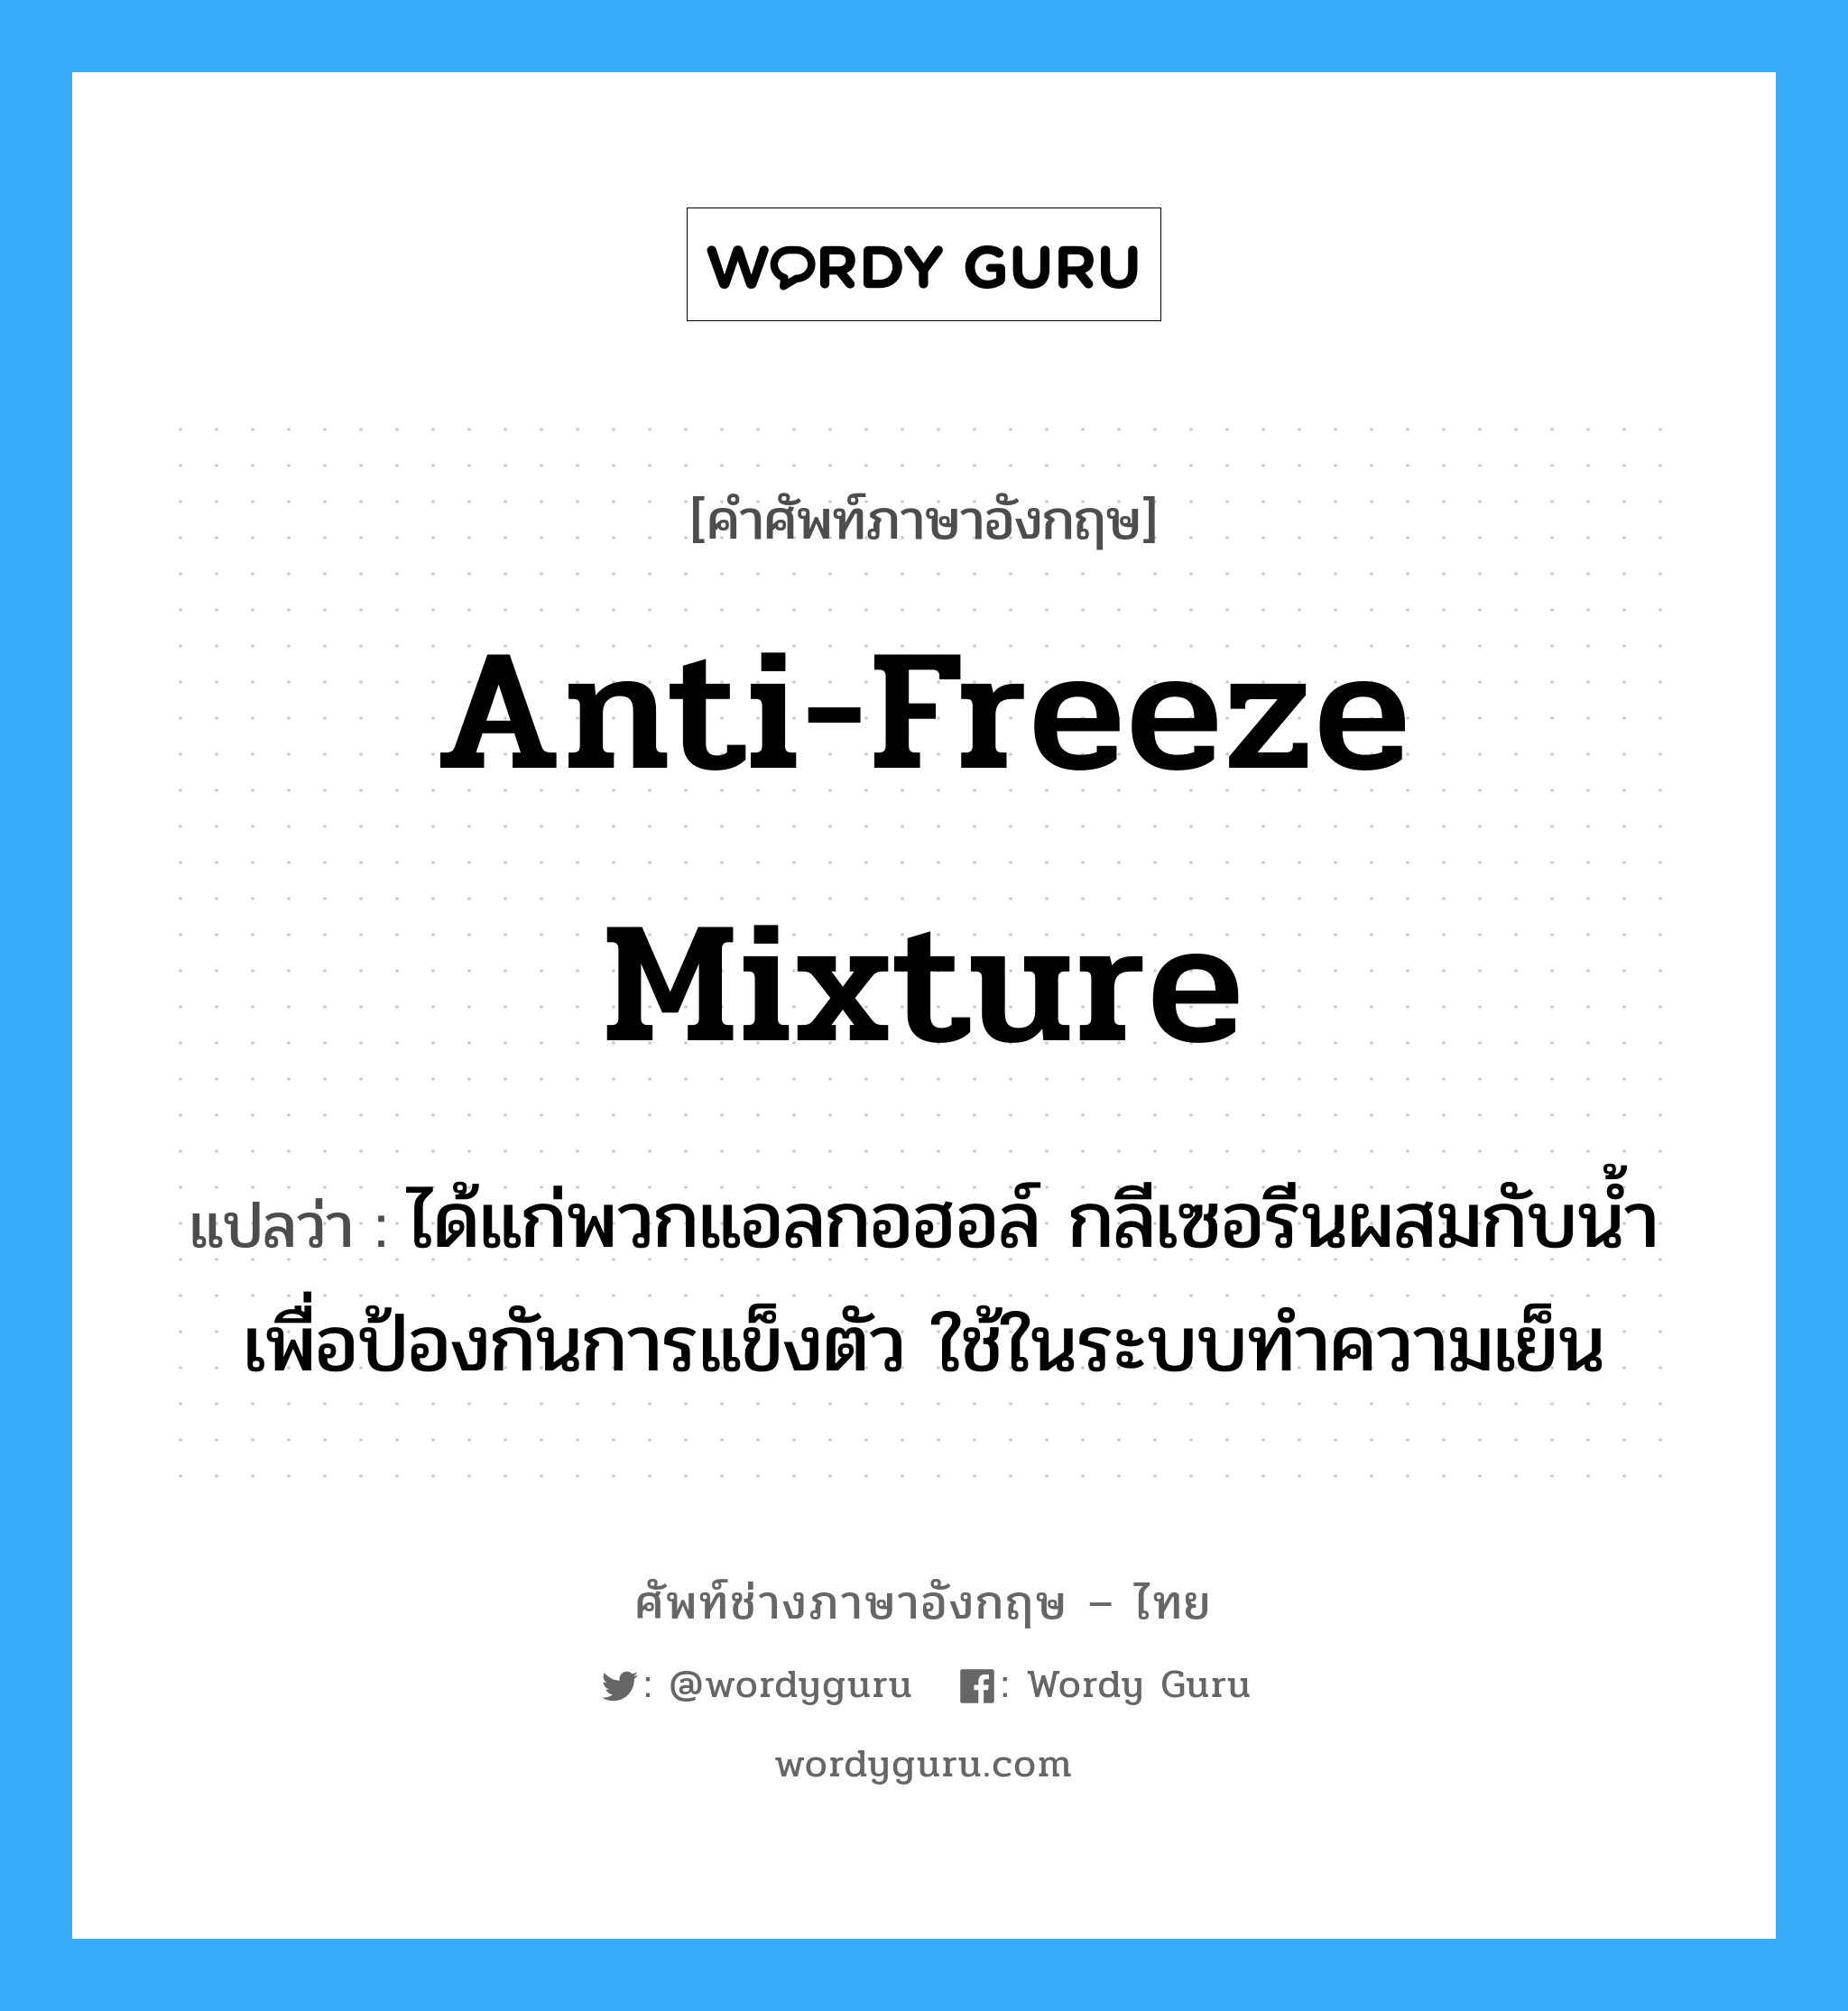 anti-freeze mixture แปลว่า?, คำศัพท์ช่างภาษาอังกฤษ - ไทย anti-freeze mixture คำศัพท์ภาษาอังกฤษ anti-freeze mixture แปลว่า ได้แก่พวกแอลกอฮอล์ กลีเซอรีนผสมกับน้ำเพื่อป้องกันการแข็งตัว ใช้ในระบบทำความเย็น